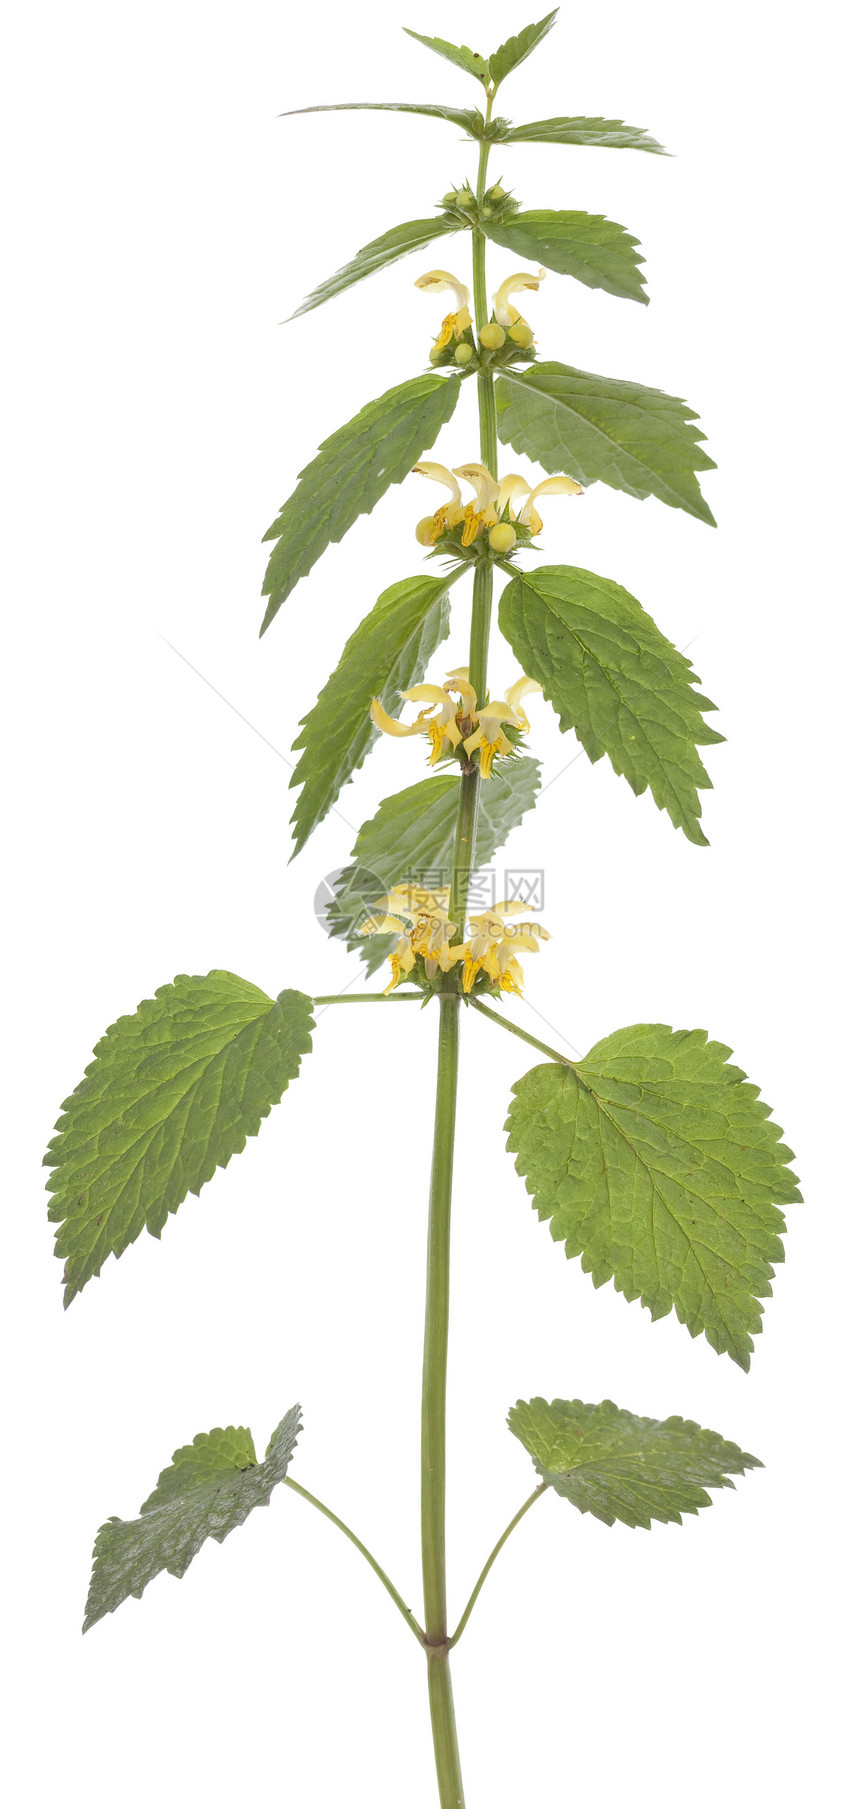 赫德斯植物群花序黄色野花叶子植物宏观图片